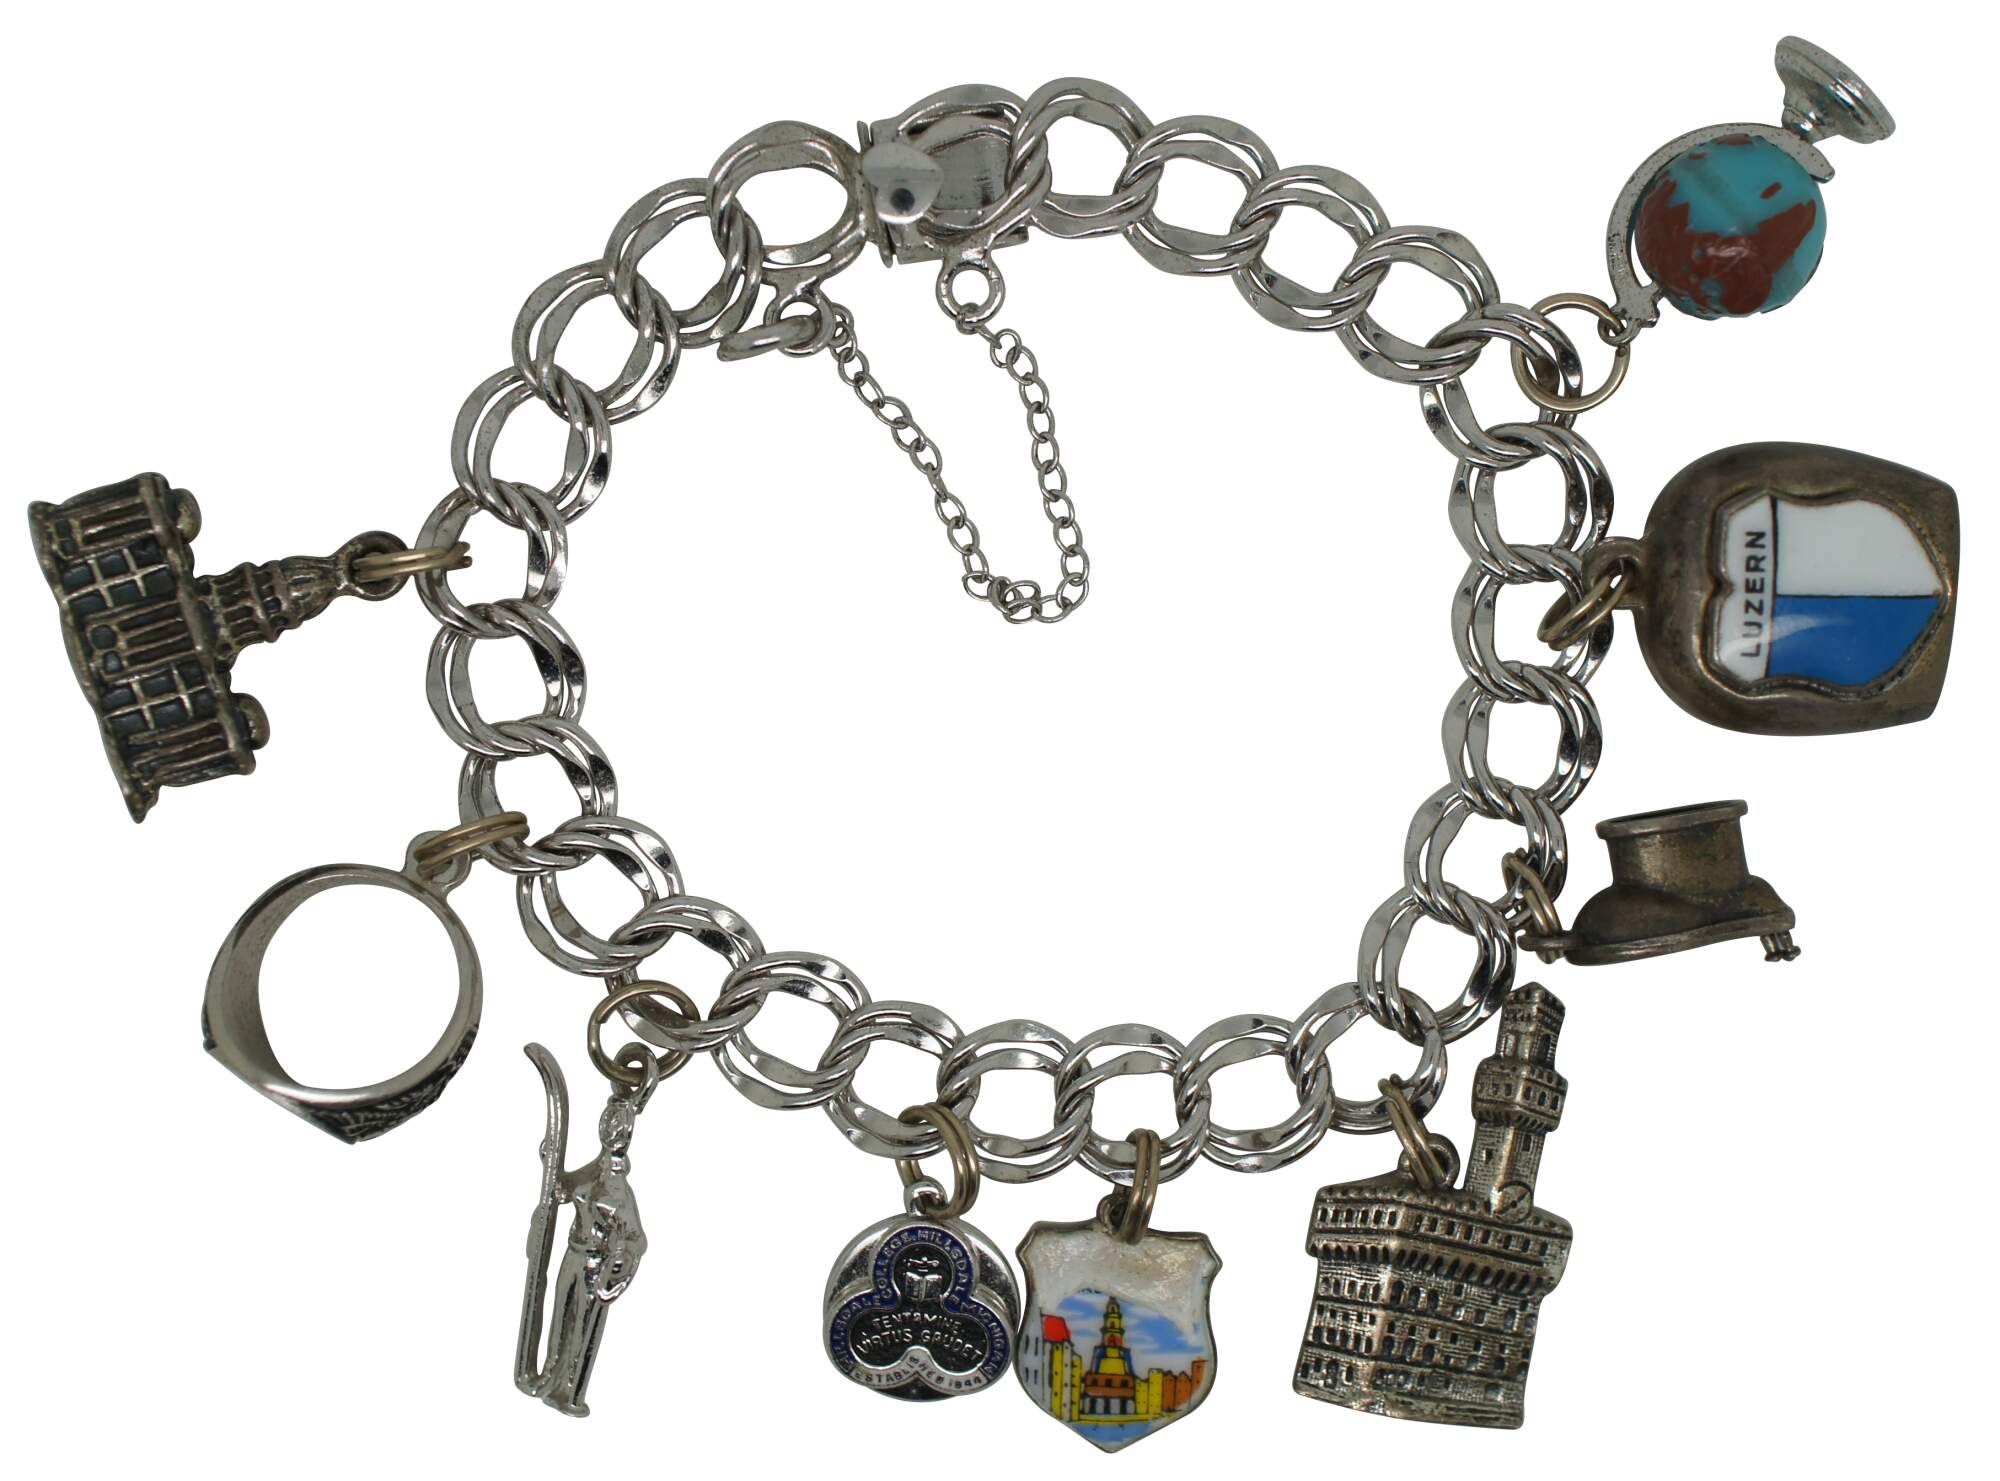 Lot 49: 14K Vintage Charm Bracelet, 126 grams | Case Auctions